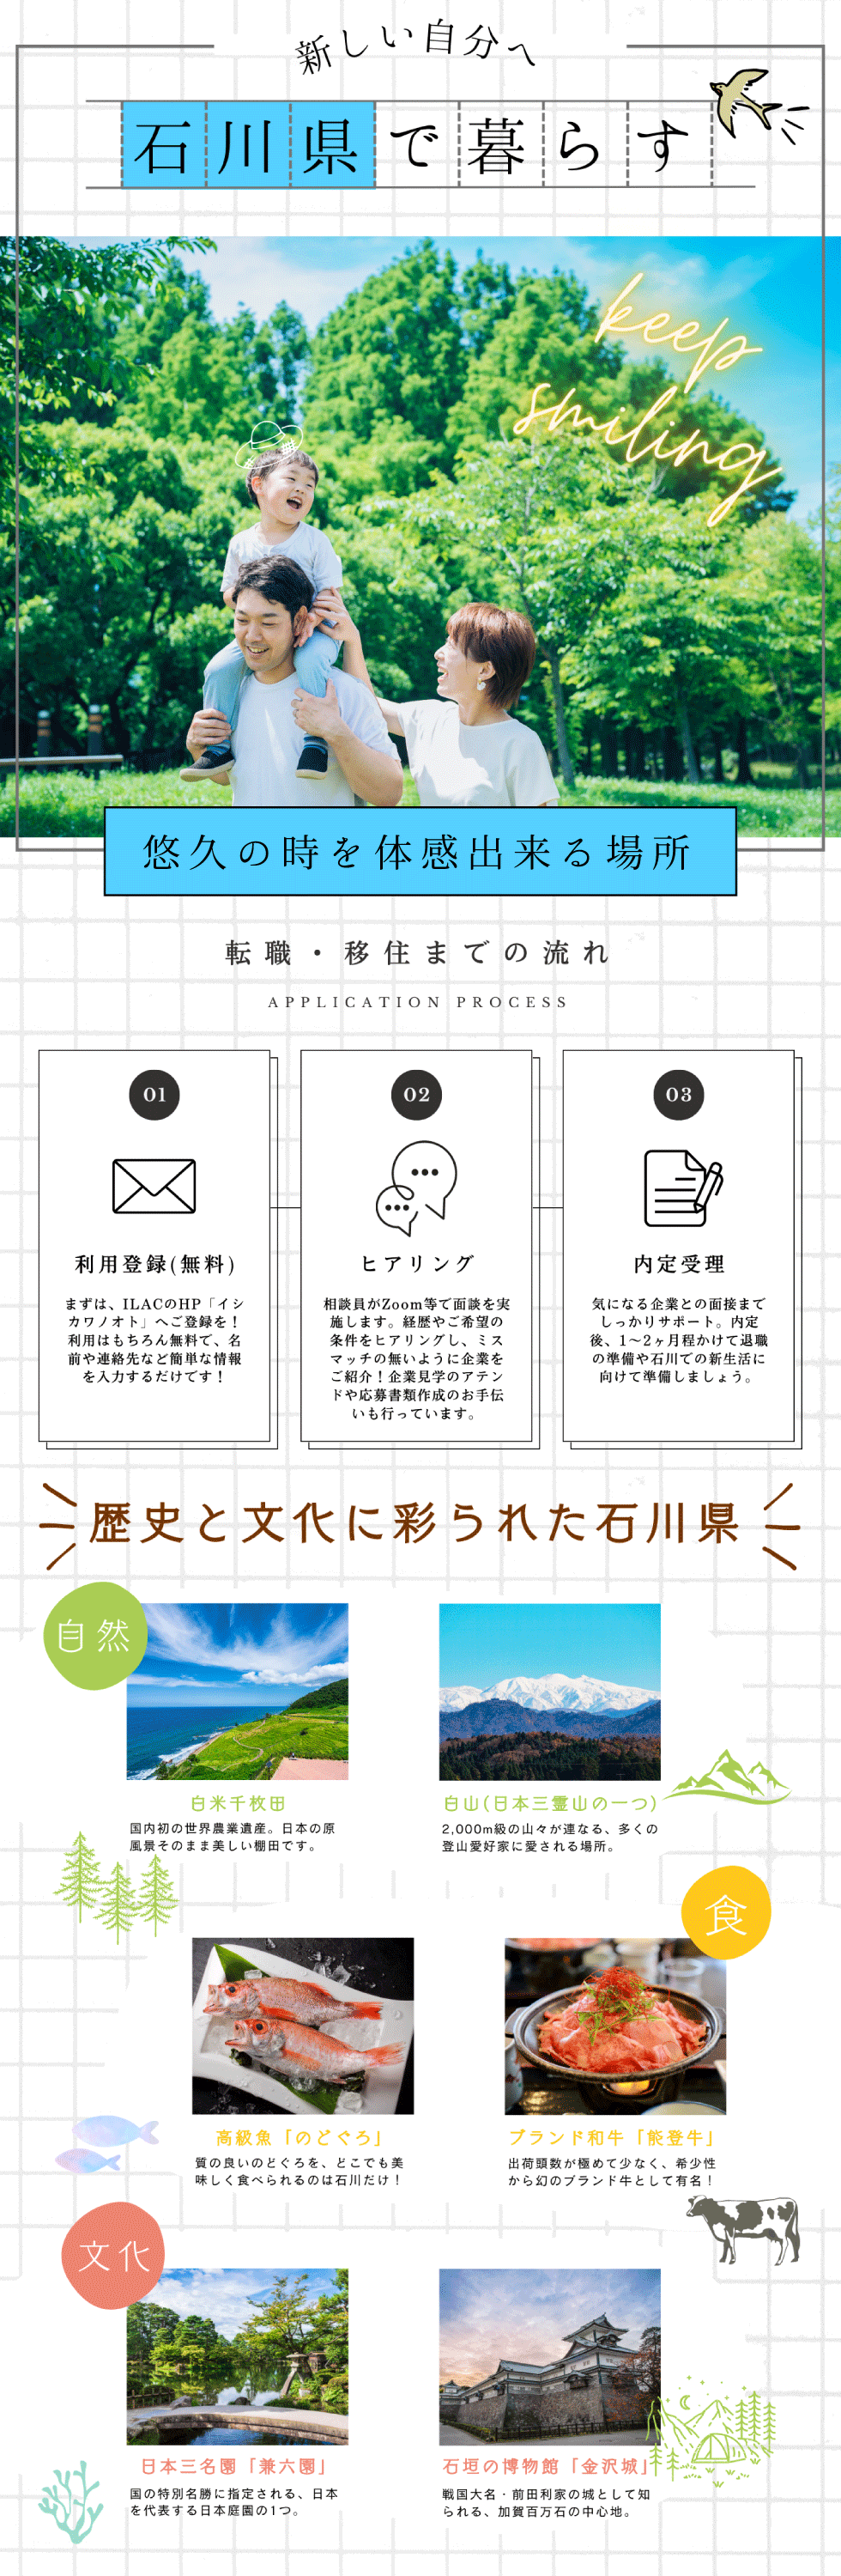 石川県　いしかわ就職・定住総合サポートセンターの企業メッセージ